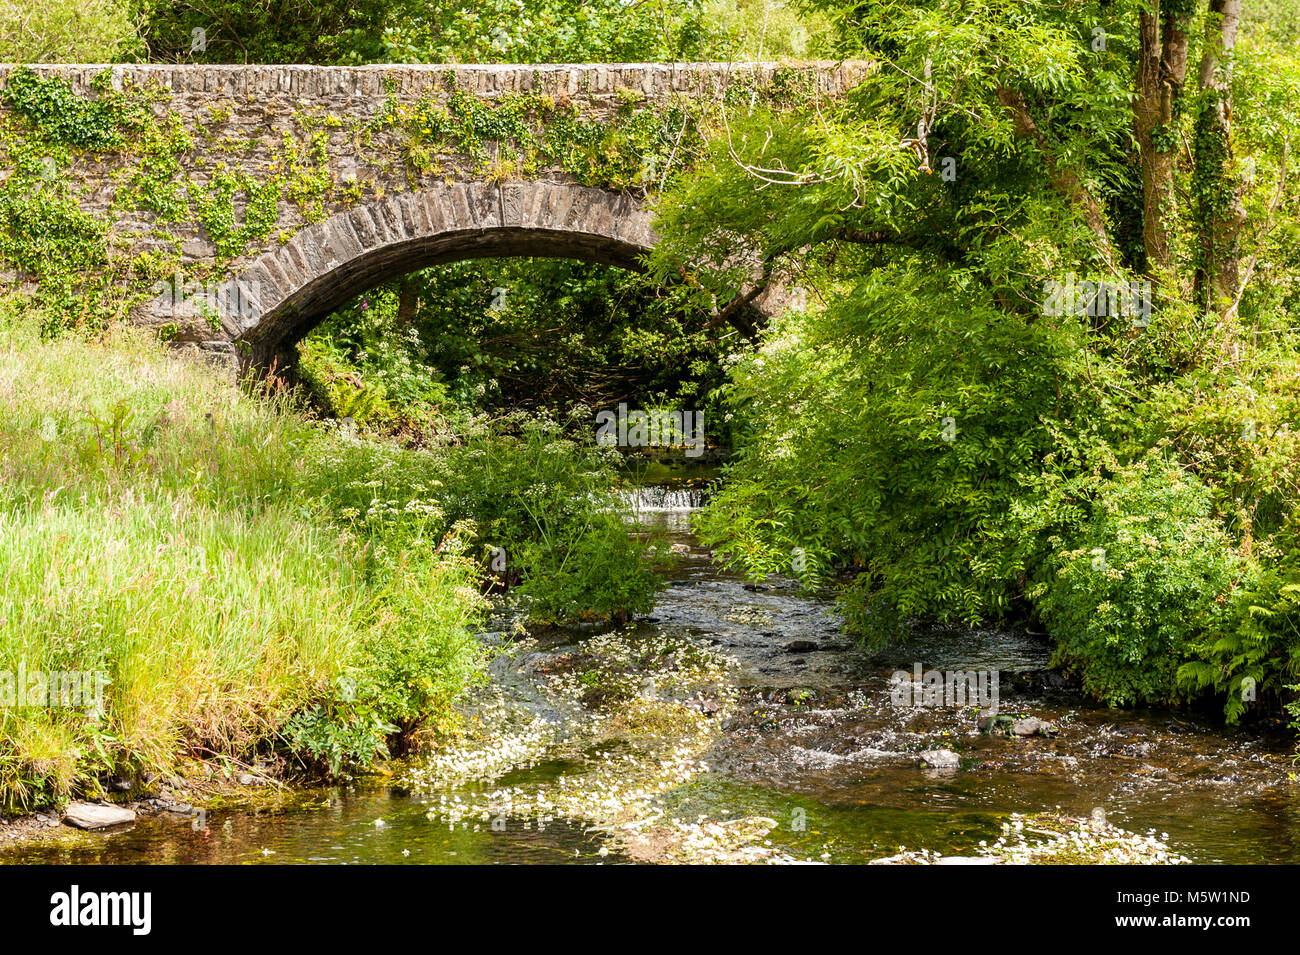 En pierre et brique pont sur une rivière avec des arbres, des arbustes, de la flore et de la faune dans la région de West Cork, Irlande. Banque D'Images